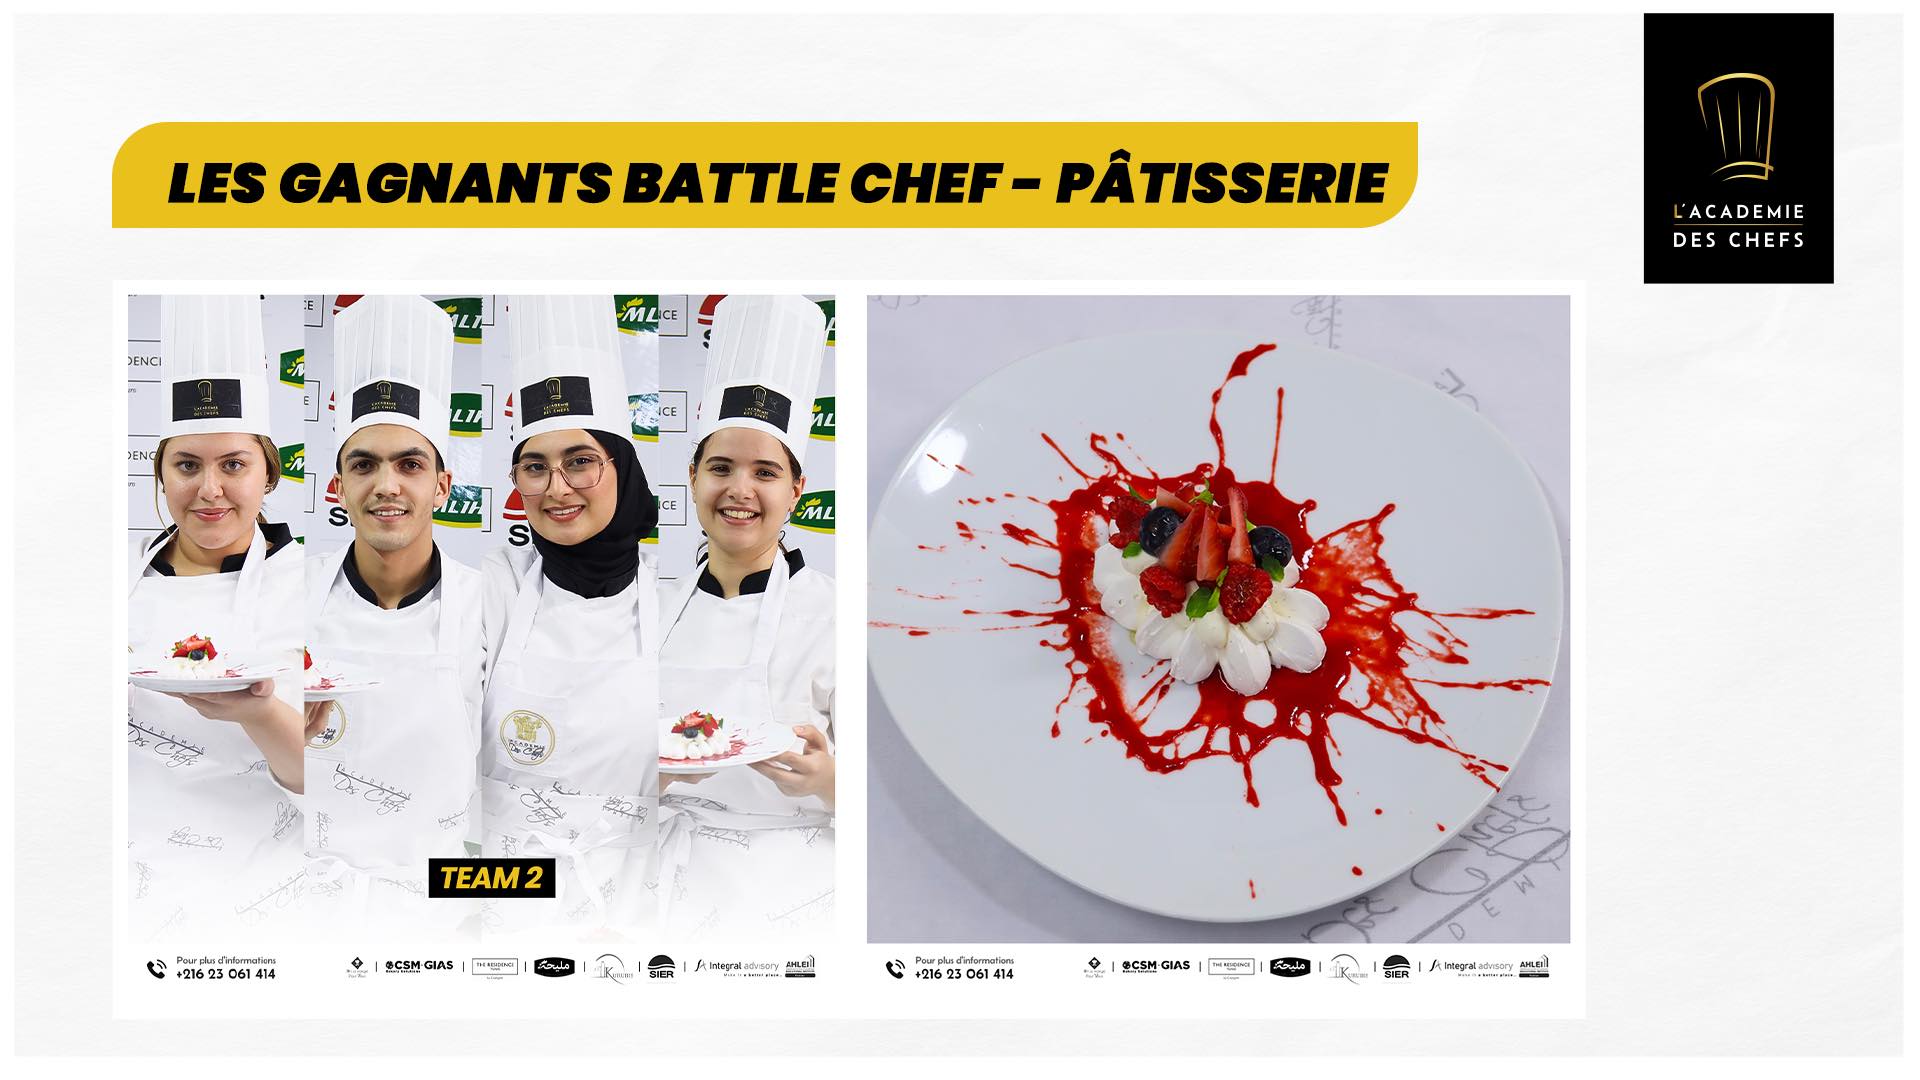 Battle chef – patisserie